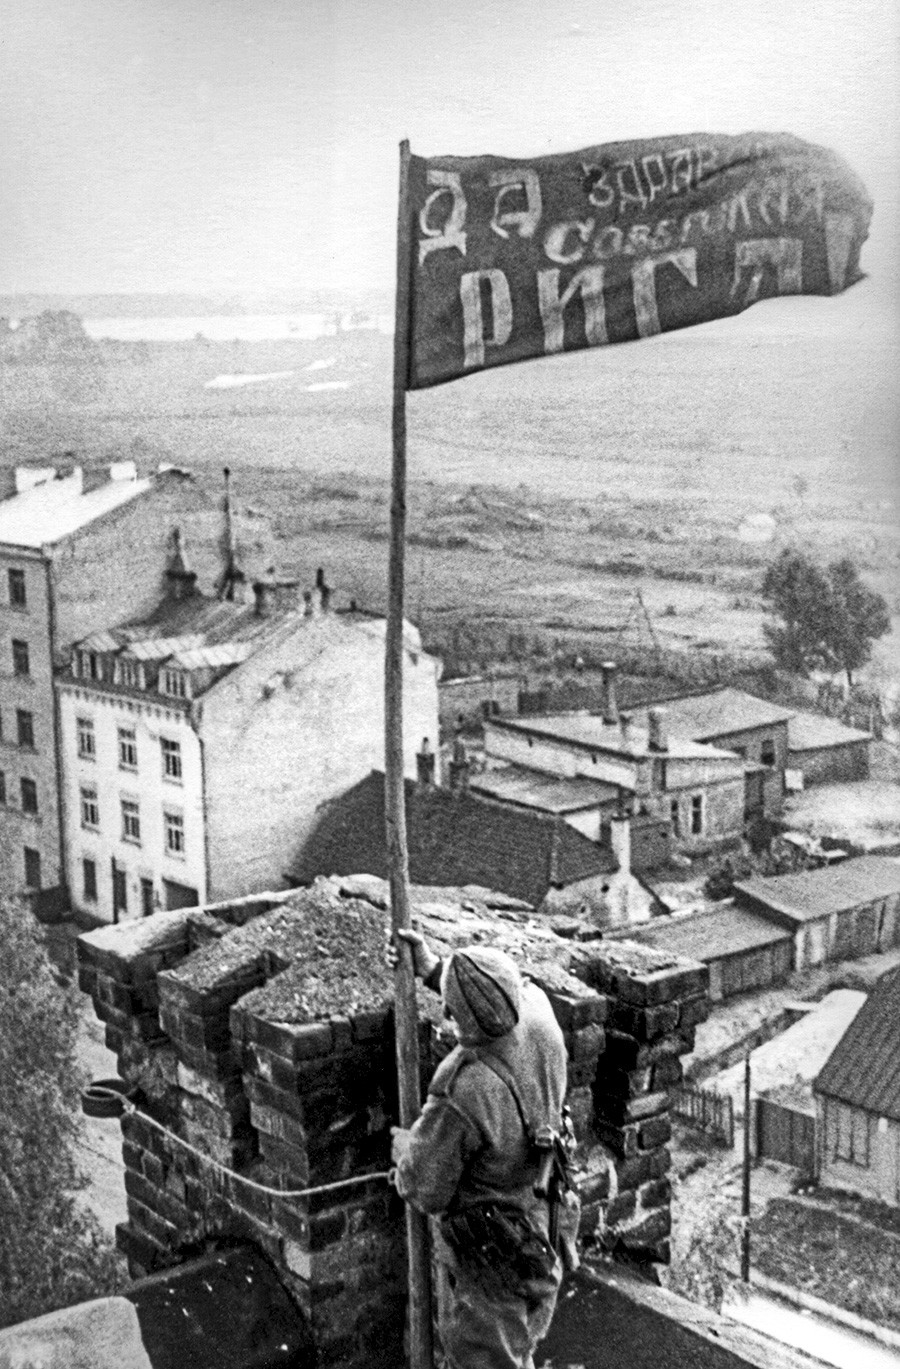 Riga, Latvijska SSR, SSSR. Vojnik ističe crvenu zastavu nad gradom nakon njegovog oslobađanja od njemačko-fašističkih osvajača tijekom Drugog svjetskog rata. 